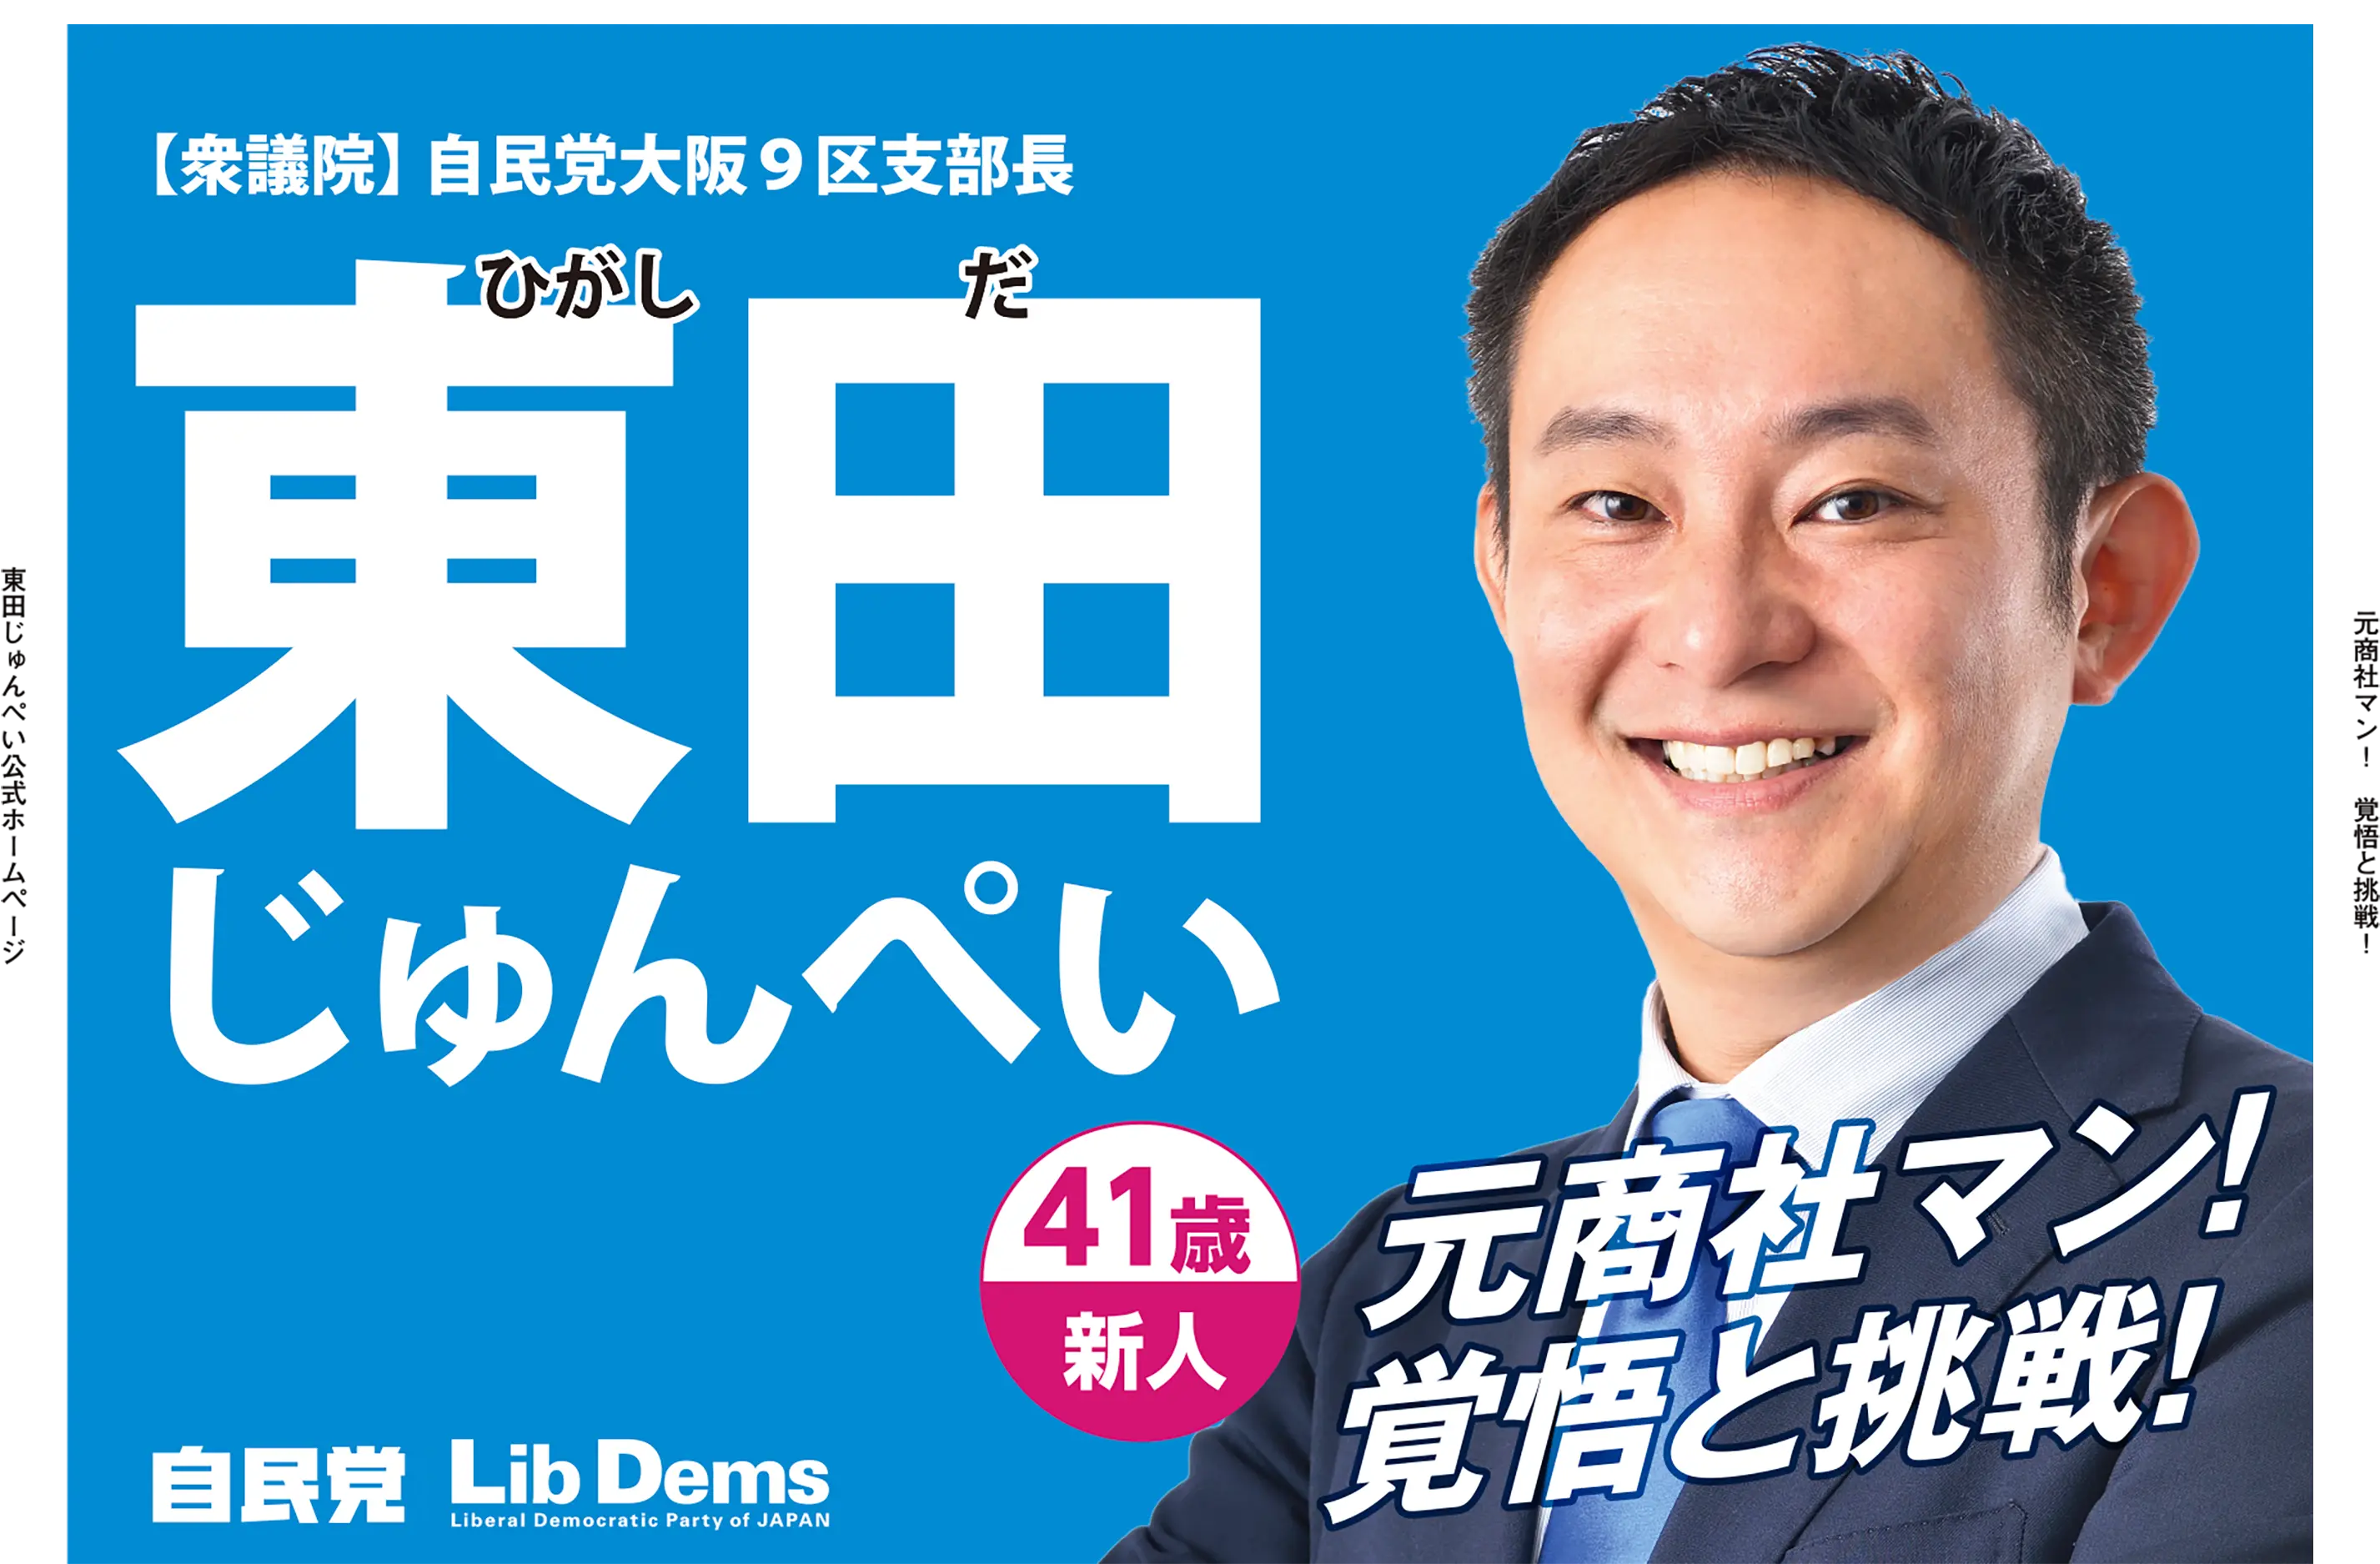 自由民主党大阪第九選挙区支部長 東田じゅんぺい